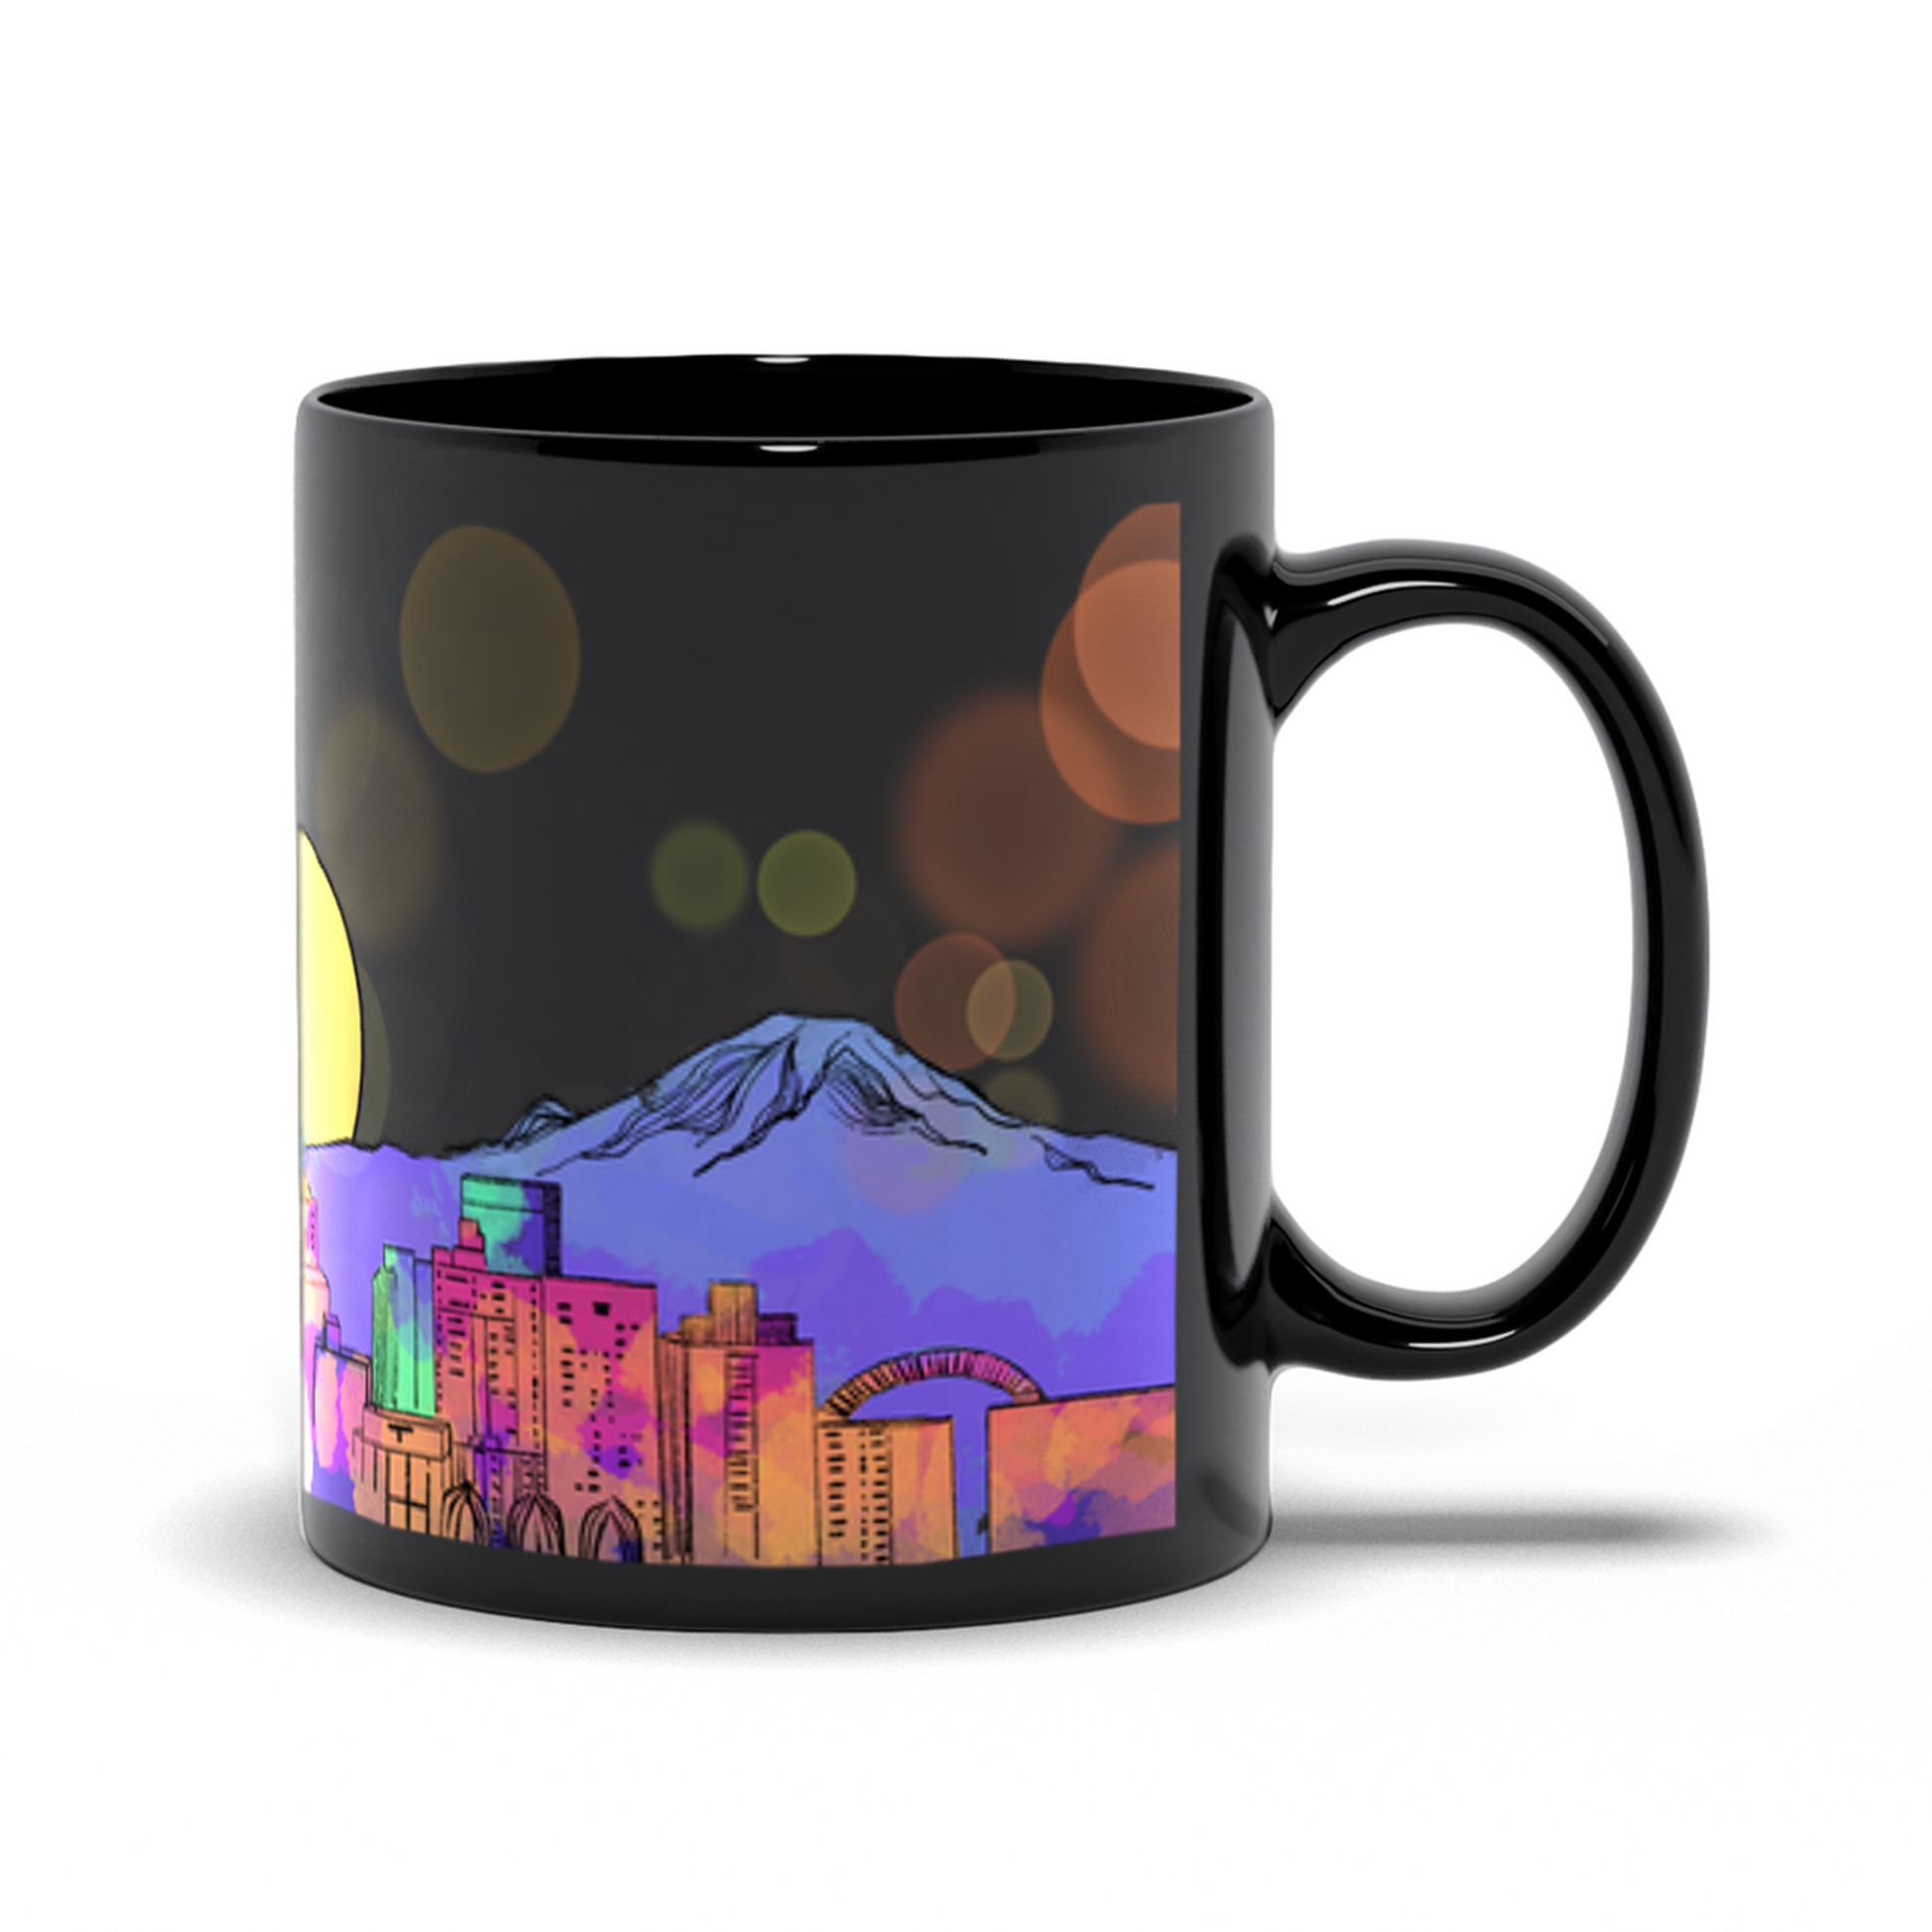 Seattle skyline mug